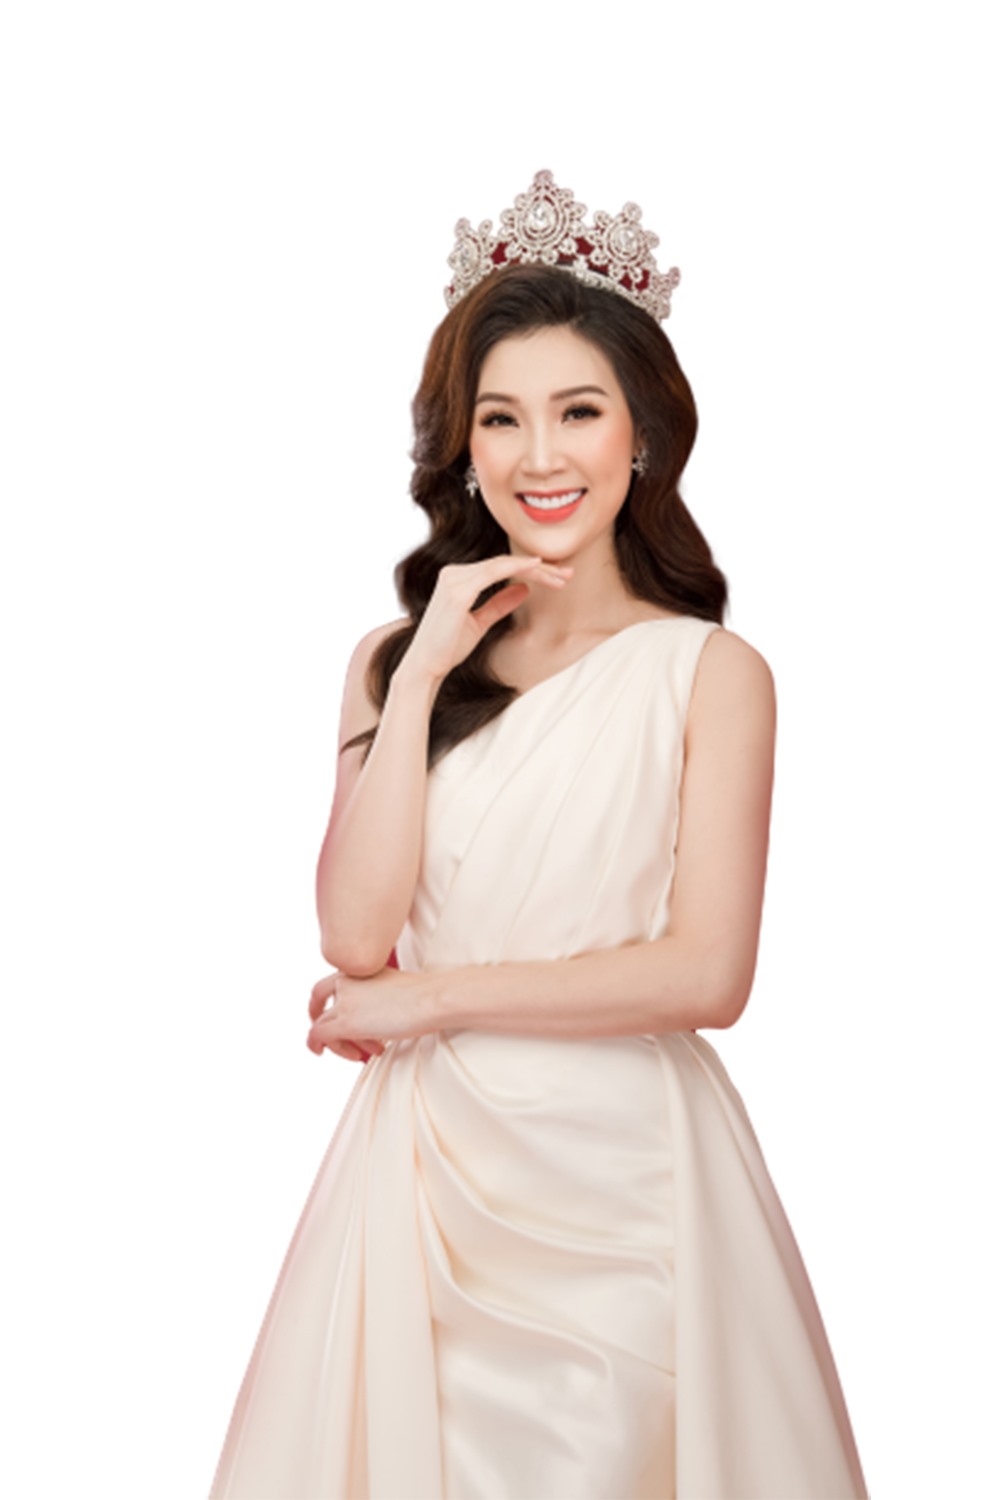 Hoa hậu Áo dài 2018 Phí Thuỳ Linh.